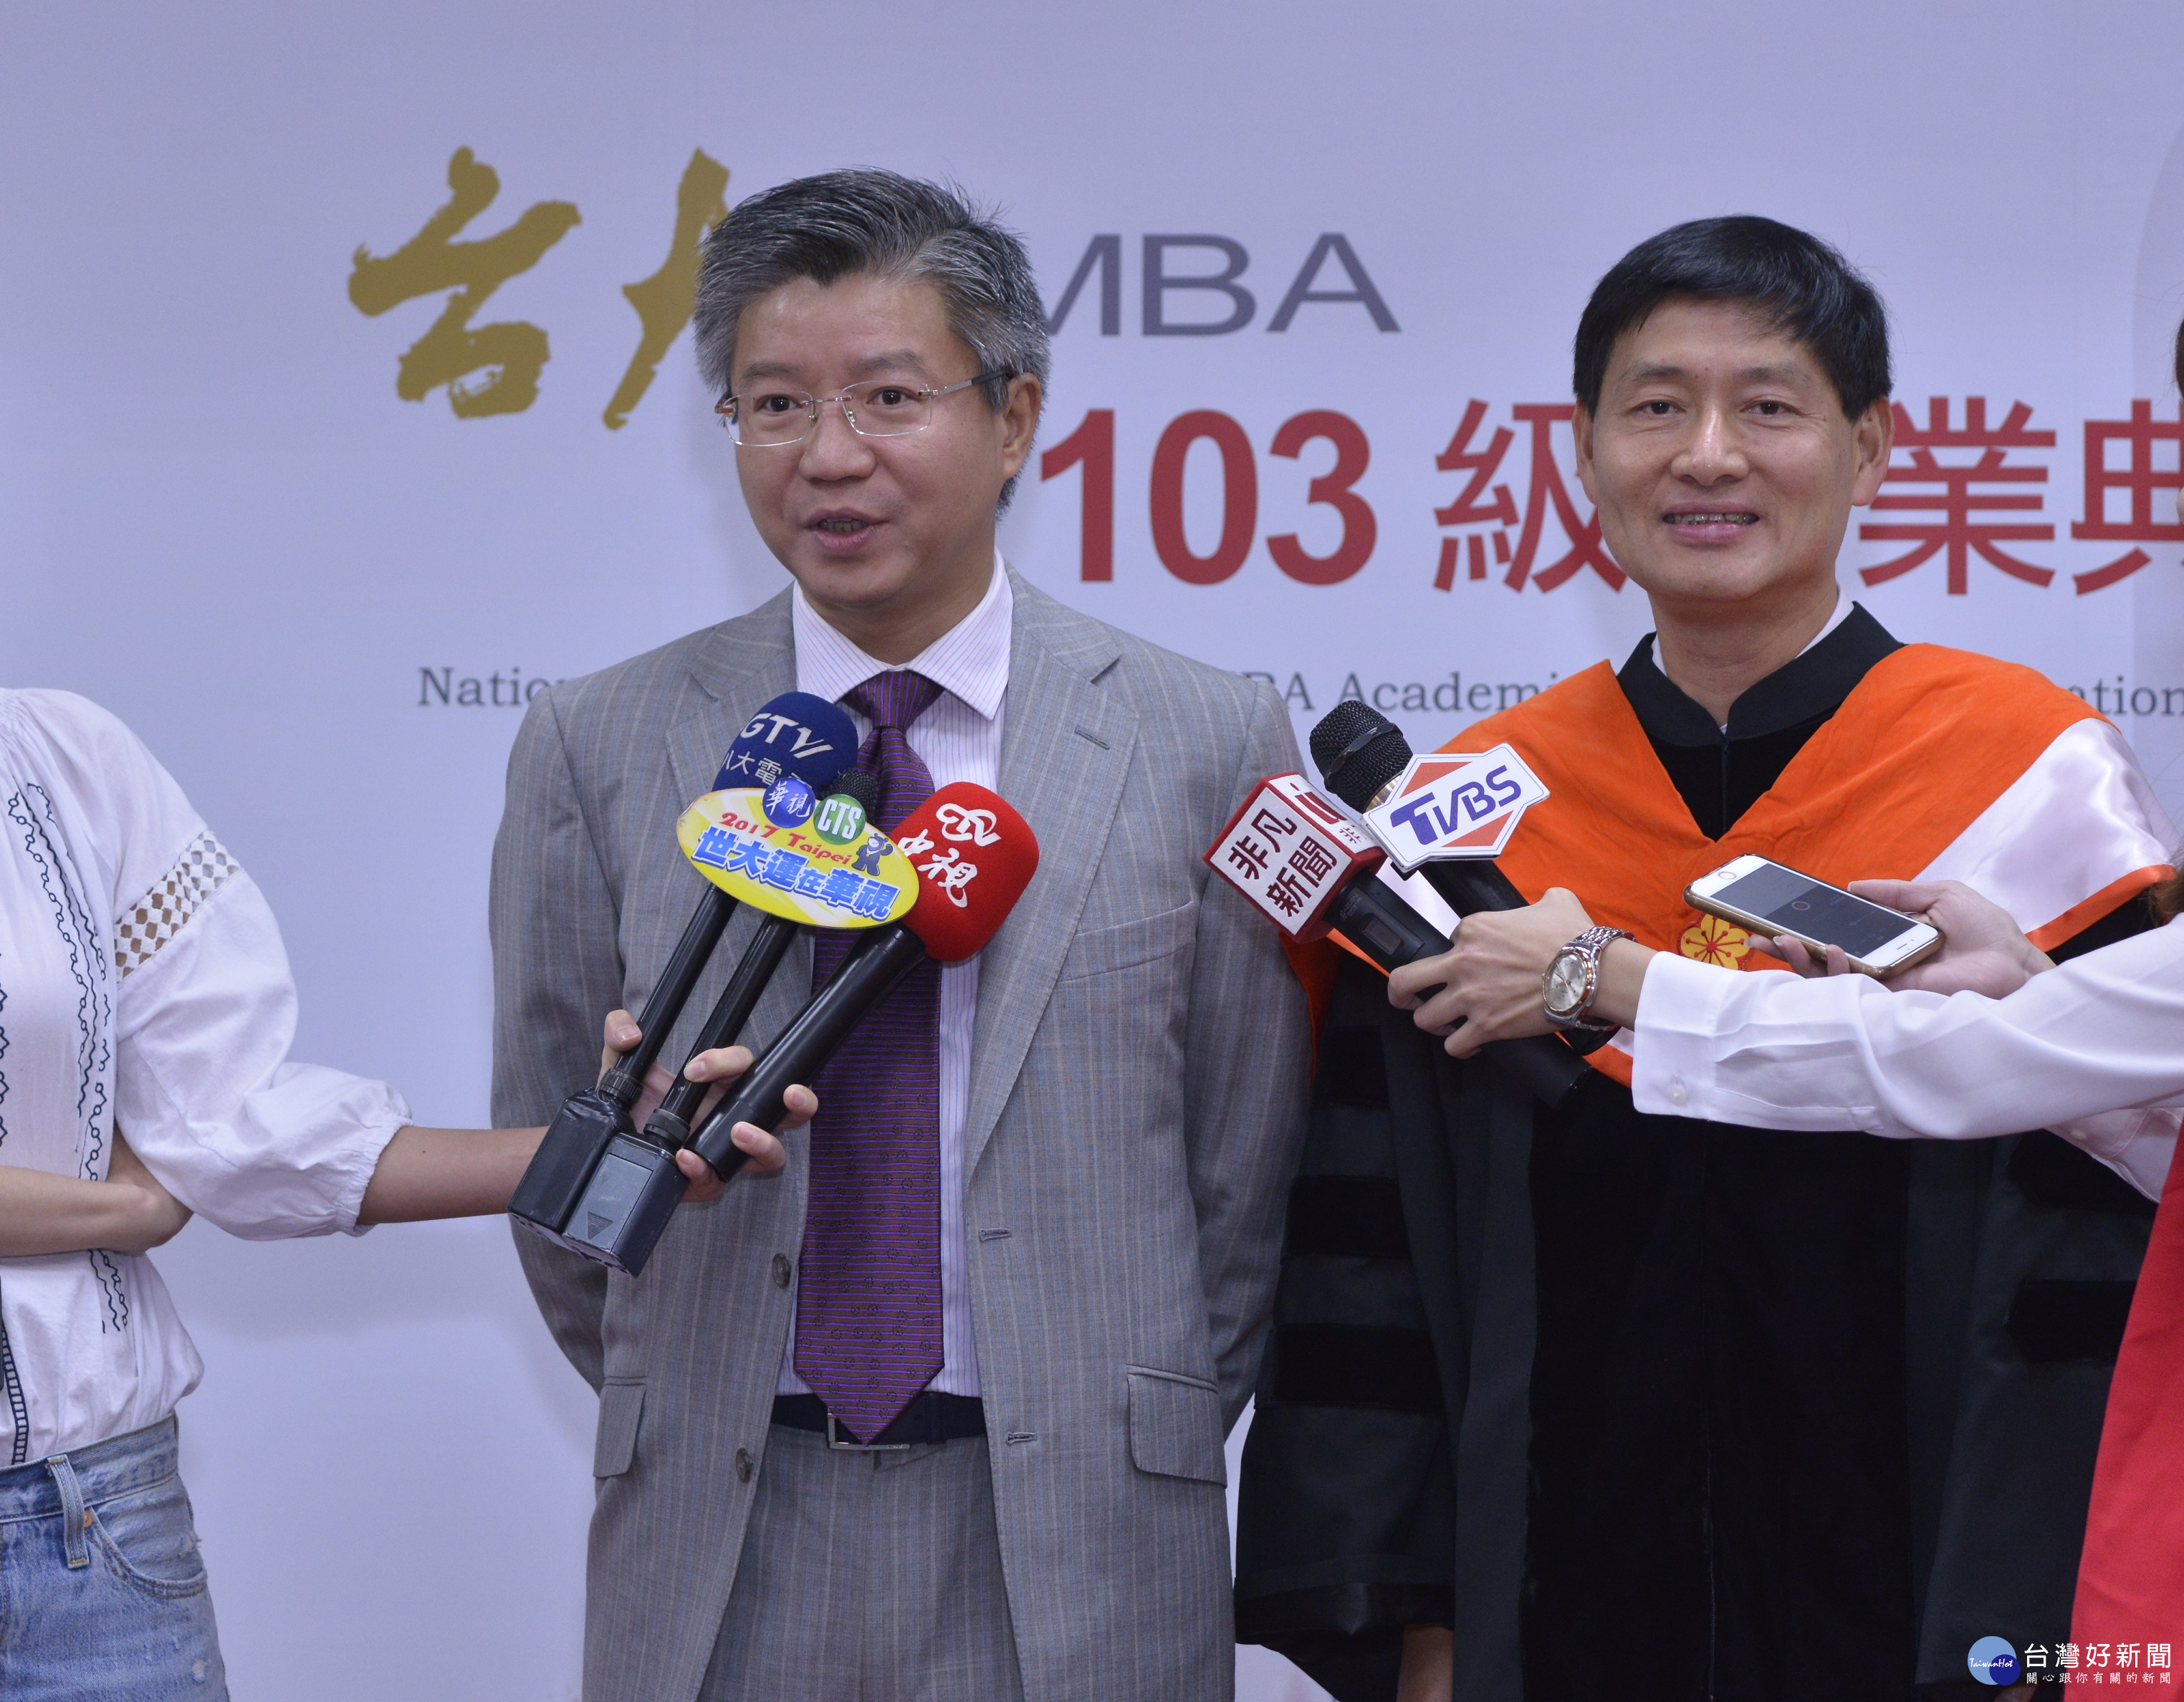 上海復旦大學管理學院陸雄文院長(左)與臺灣大學管理學院郭瑞祥院長(右)受訪合照